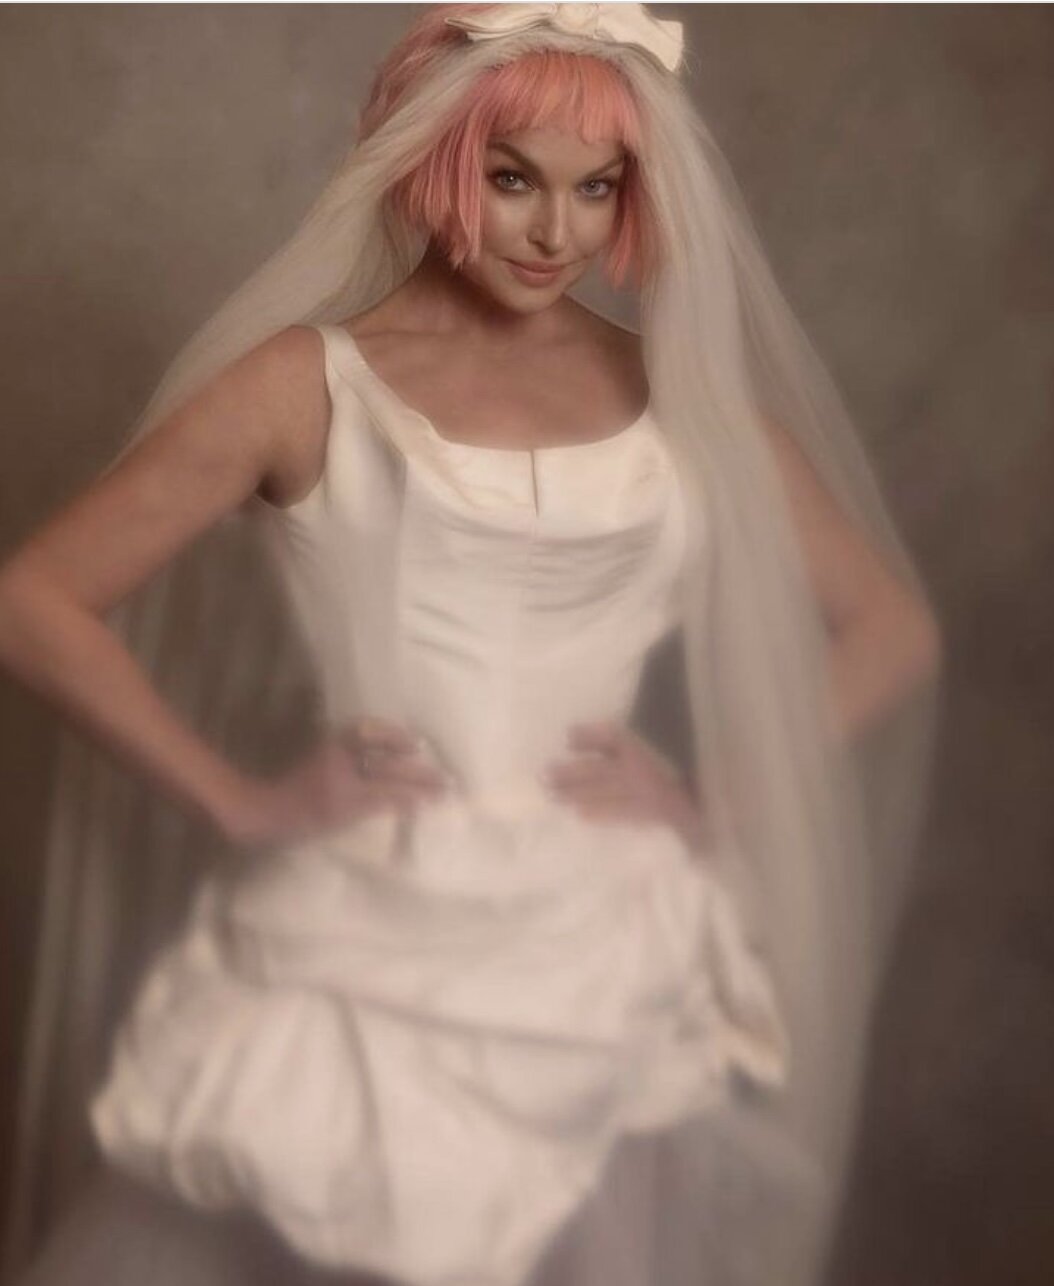 Уж замуж невтерпёж: Анастасия Волочкова в образе потрепанной невесты с розовыми волосами поразила публику